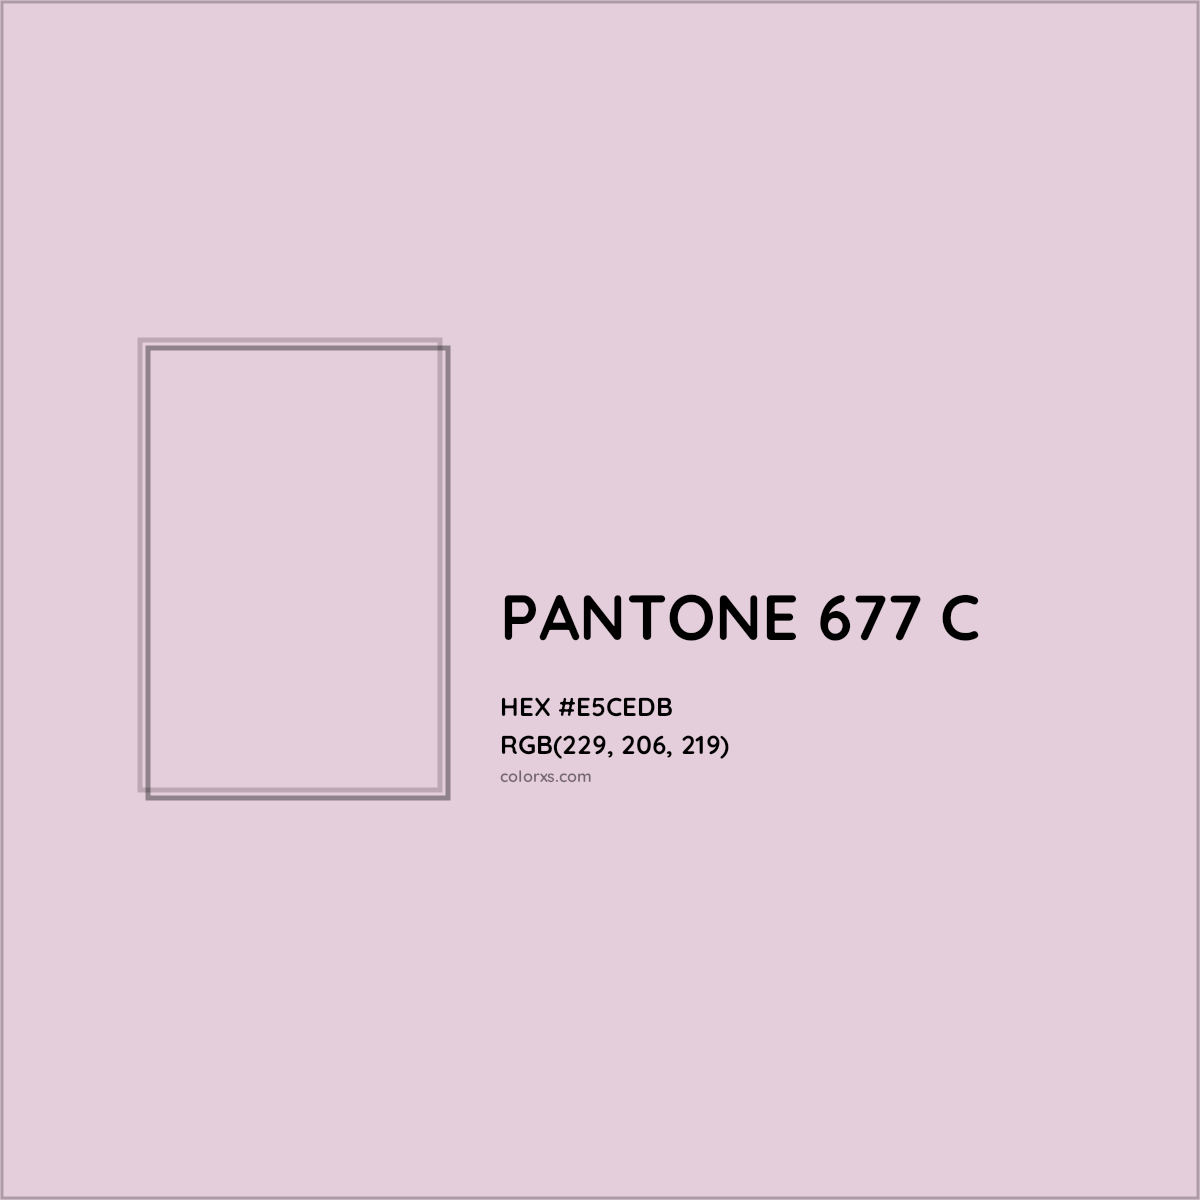 HEX #E5CEDB PANTONE 677 C CMS Pantone PMS - Color Code